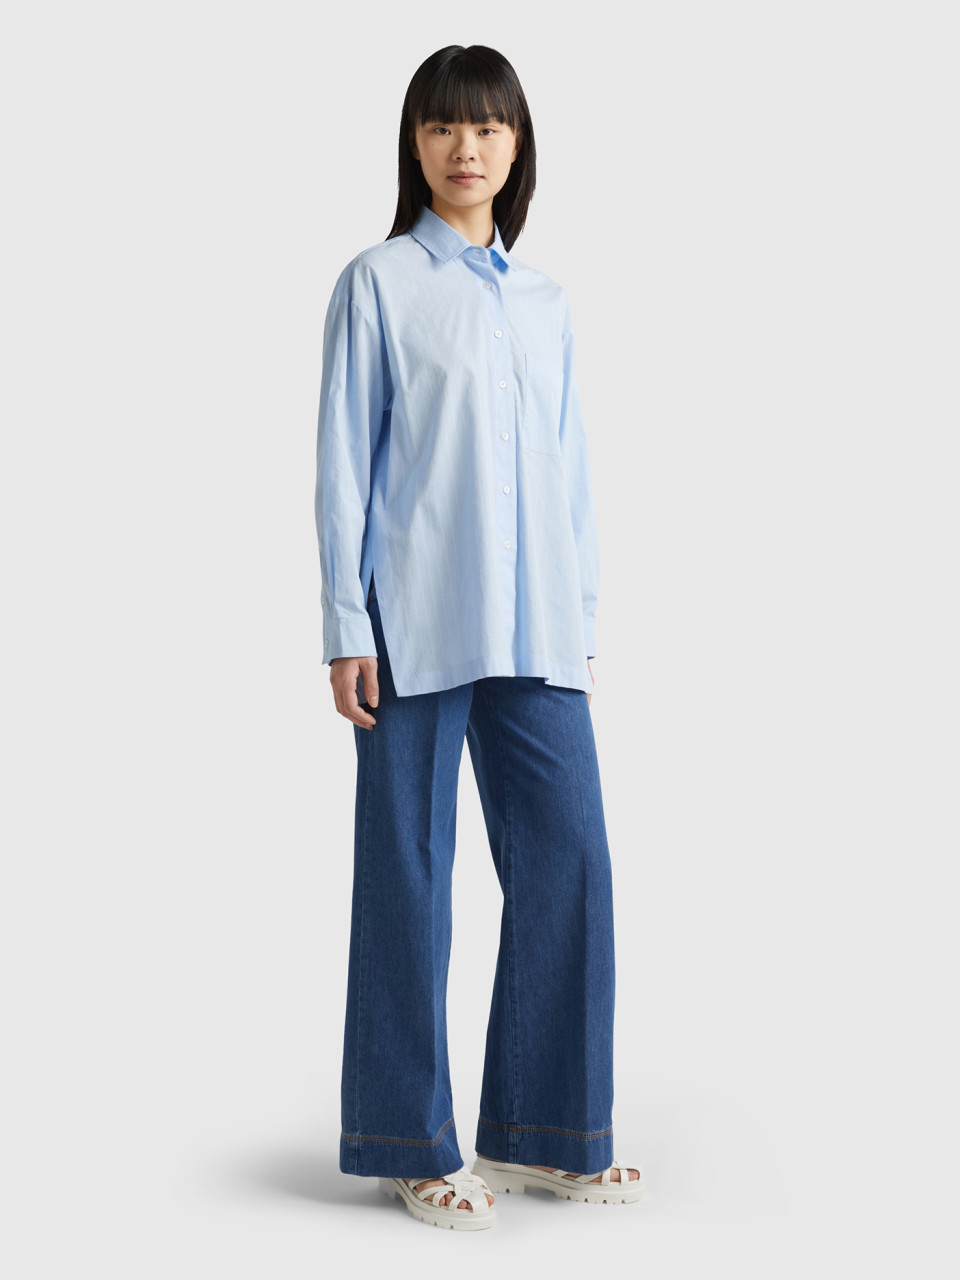 Benetton, Lightweight Oversized Shirt With Slits, Sky Blue, Women